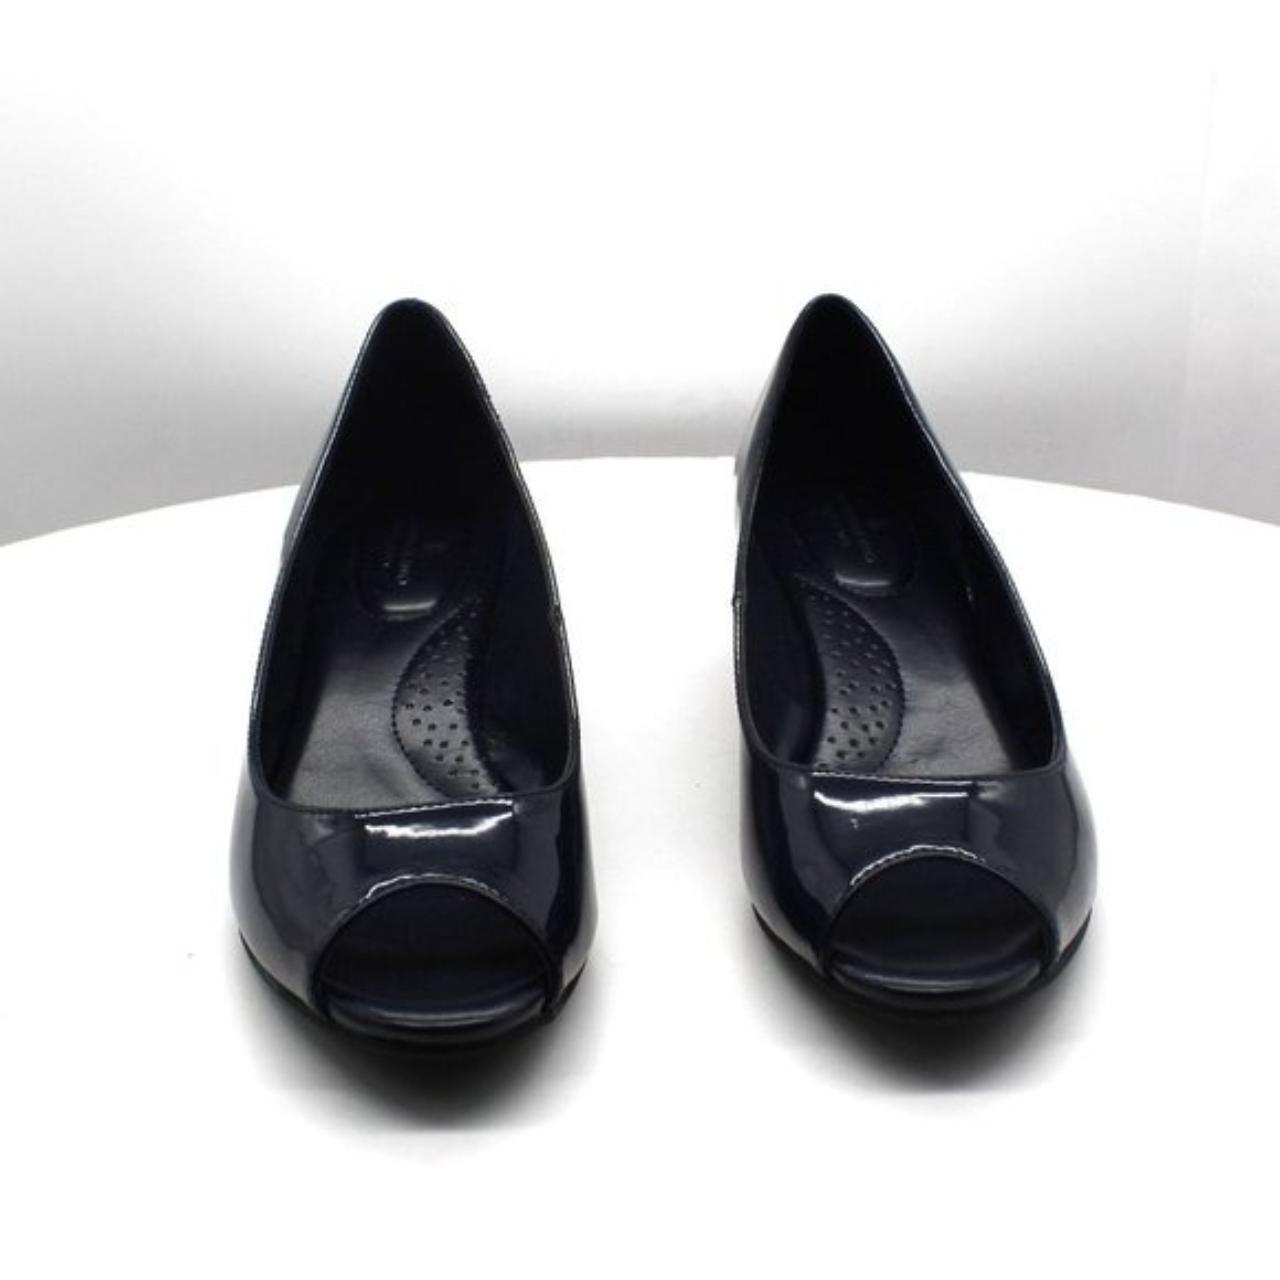 Product Image 3 - Bandolino Women's Candra Peep Toe